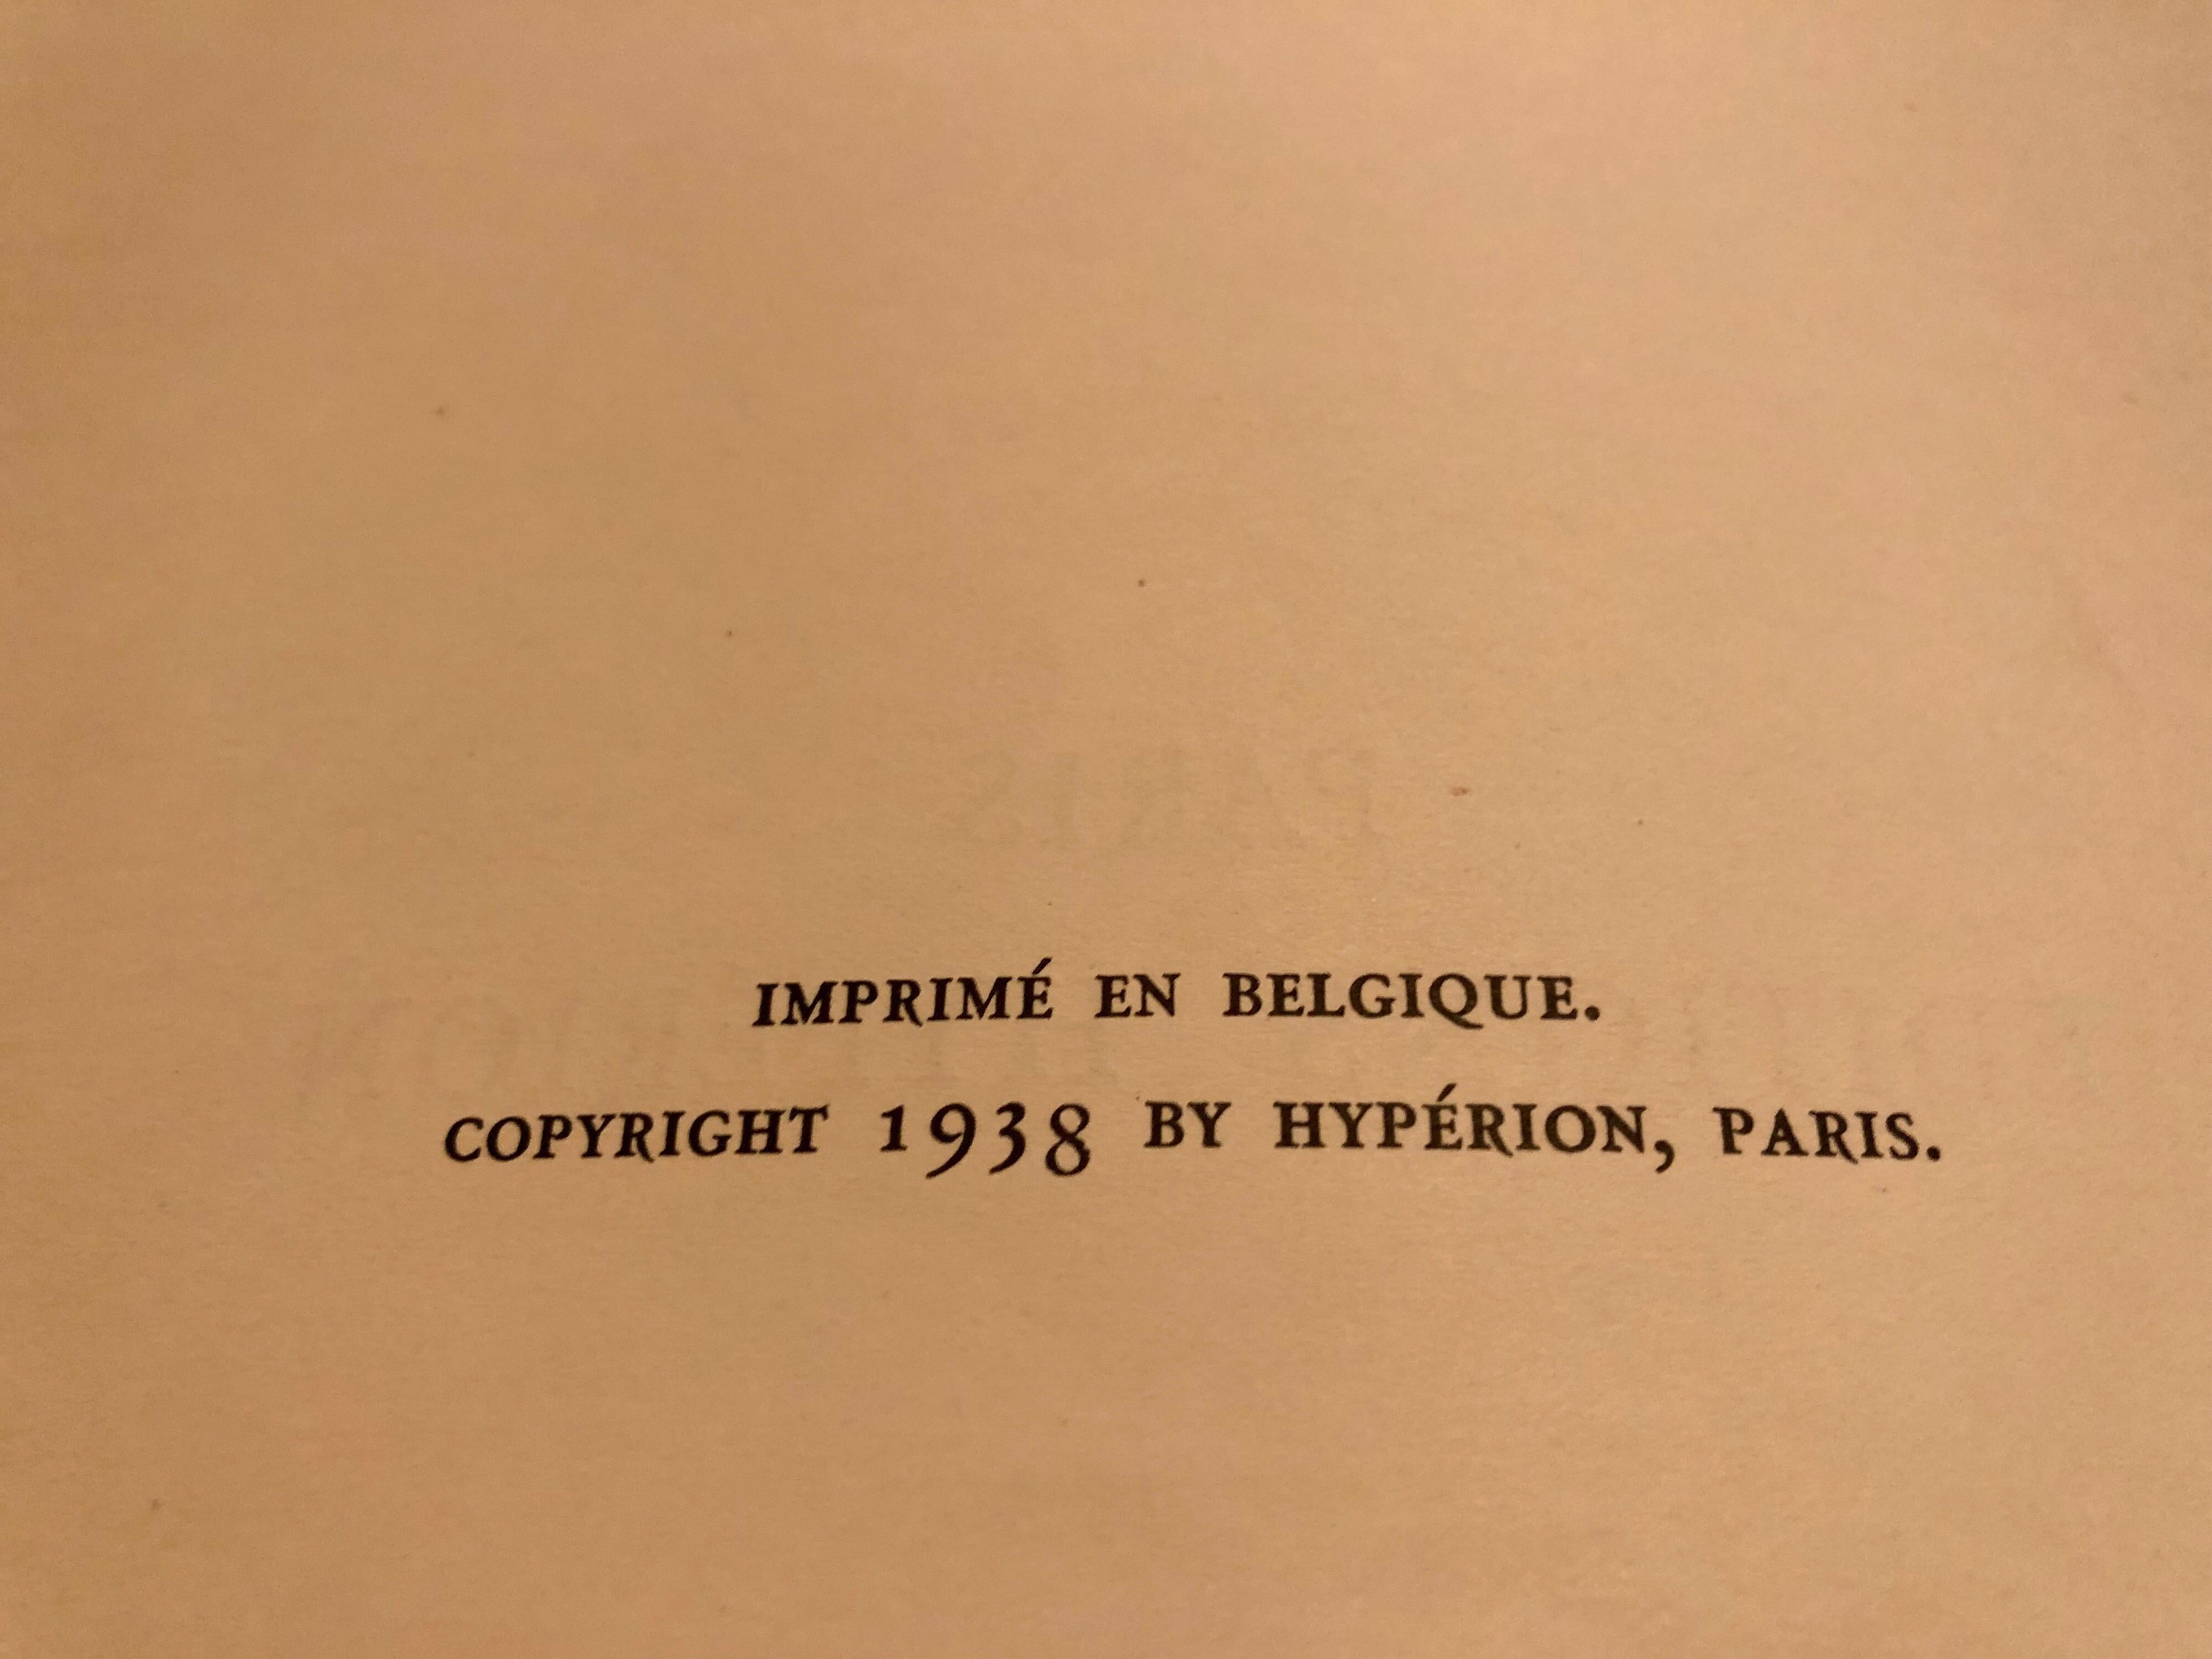 French Eugène Henri Paul Gauguin by John Rewald, Editions Hyperion, Paris, 1938